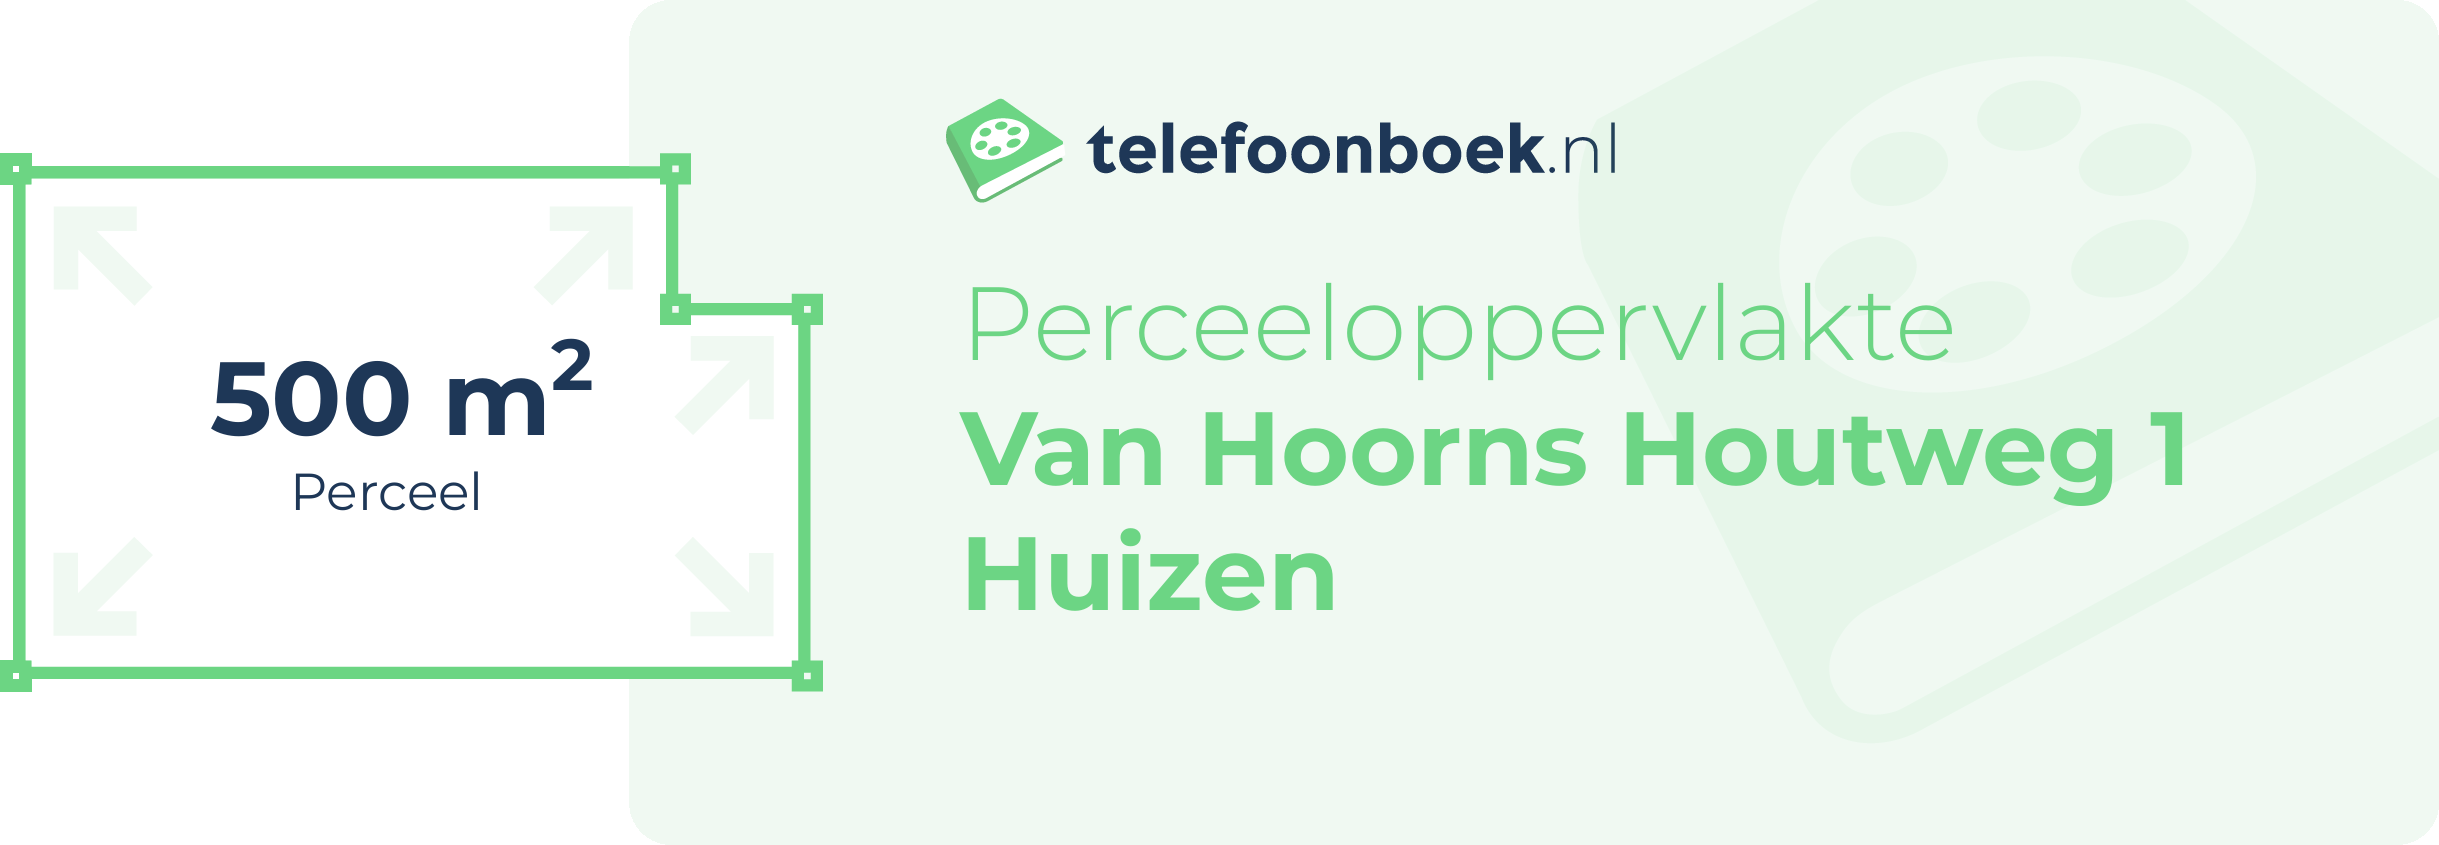 Perceeloppervlakte Van Hoorns Houtweg 1 Huizen